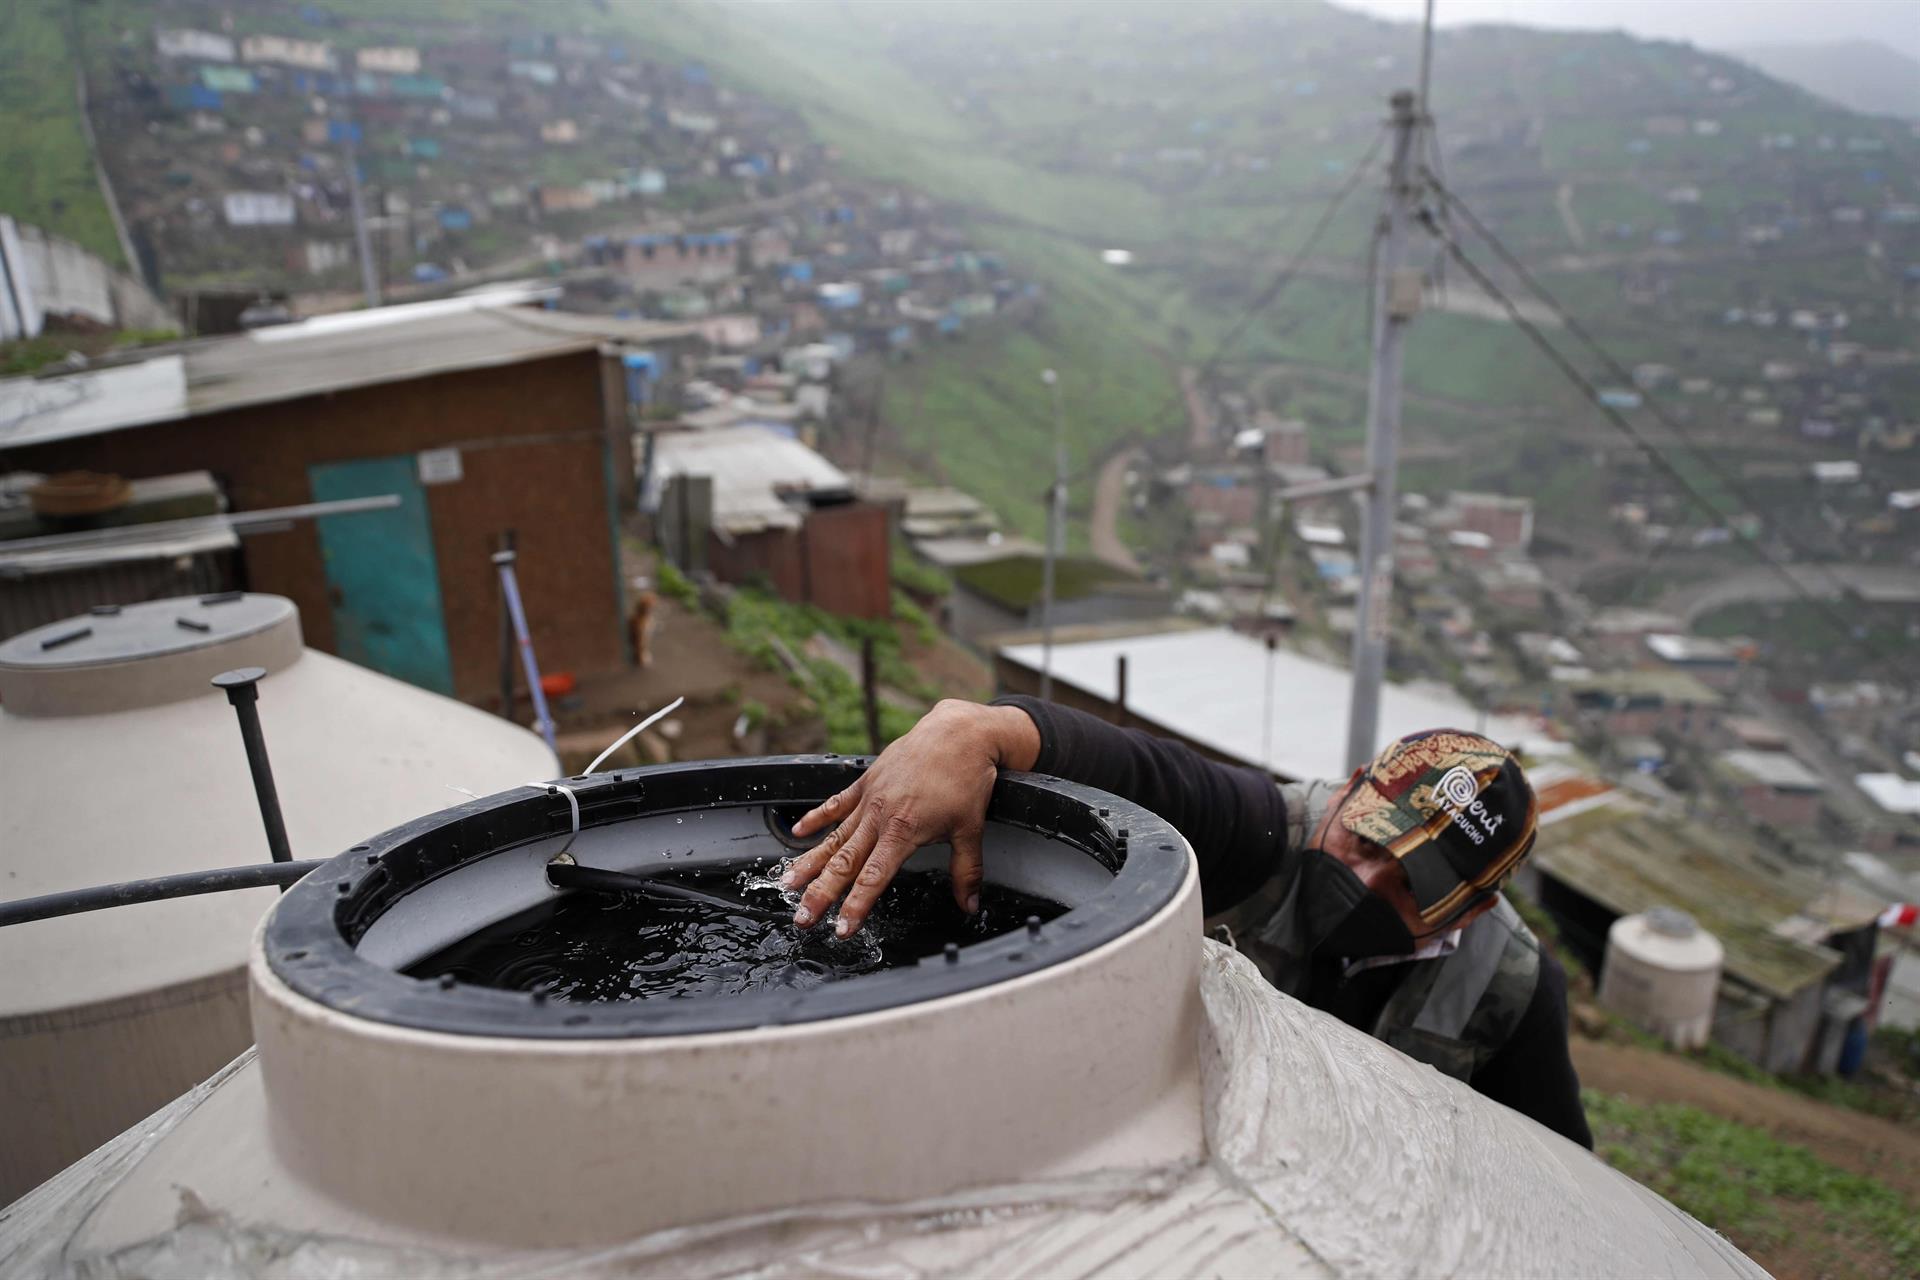 La crisis de agua en Perú y el “muro de la vergüenza”, la impresionante construcción que se ha hecho viral